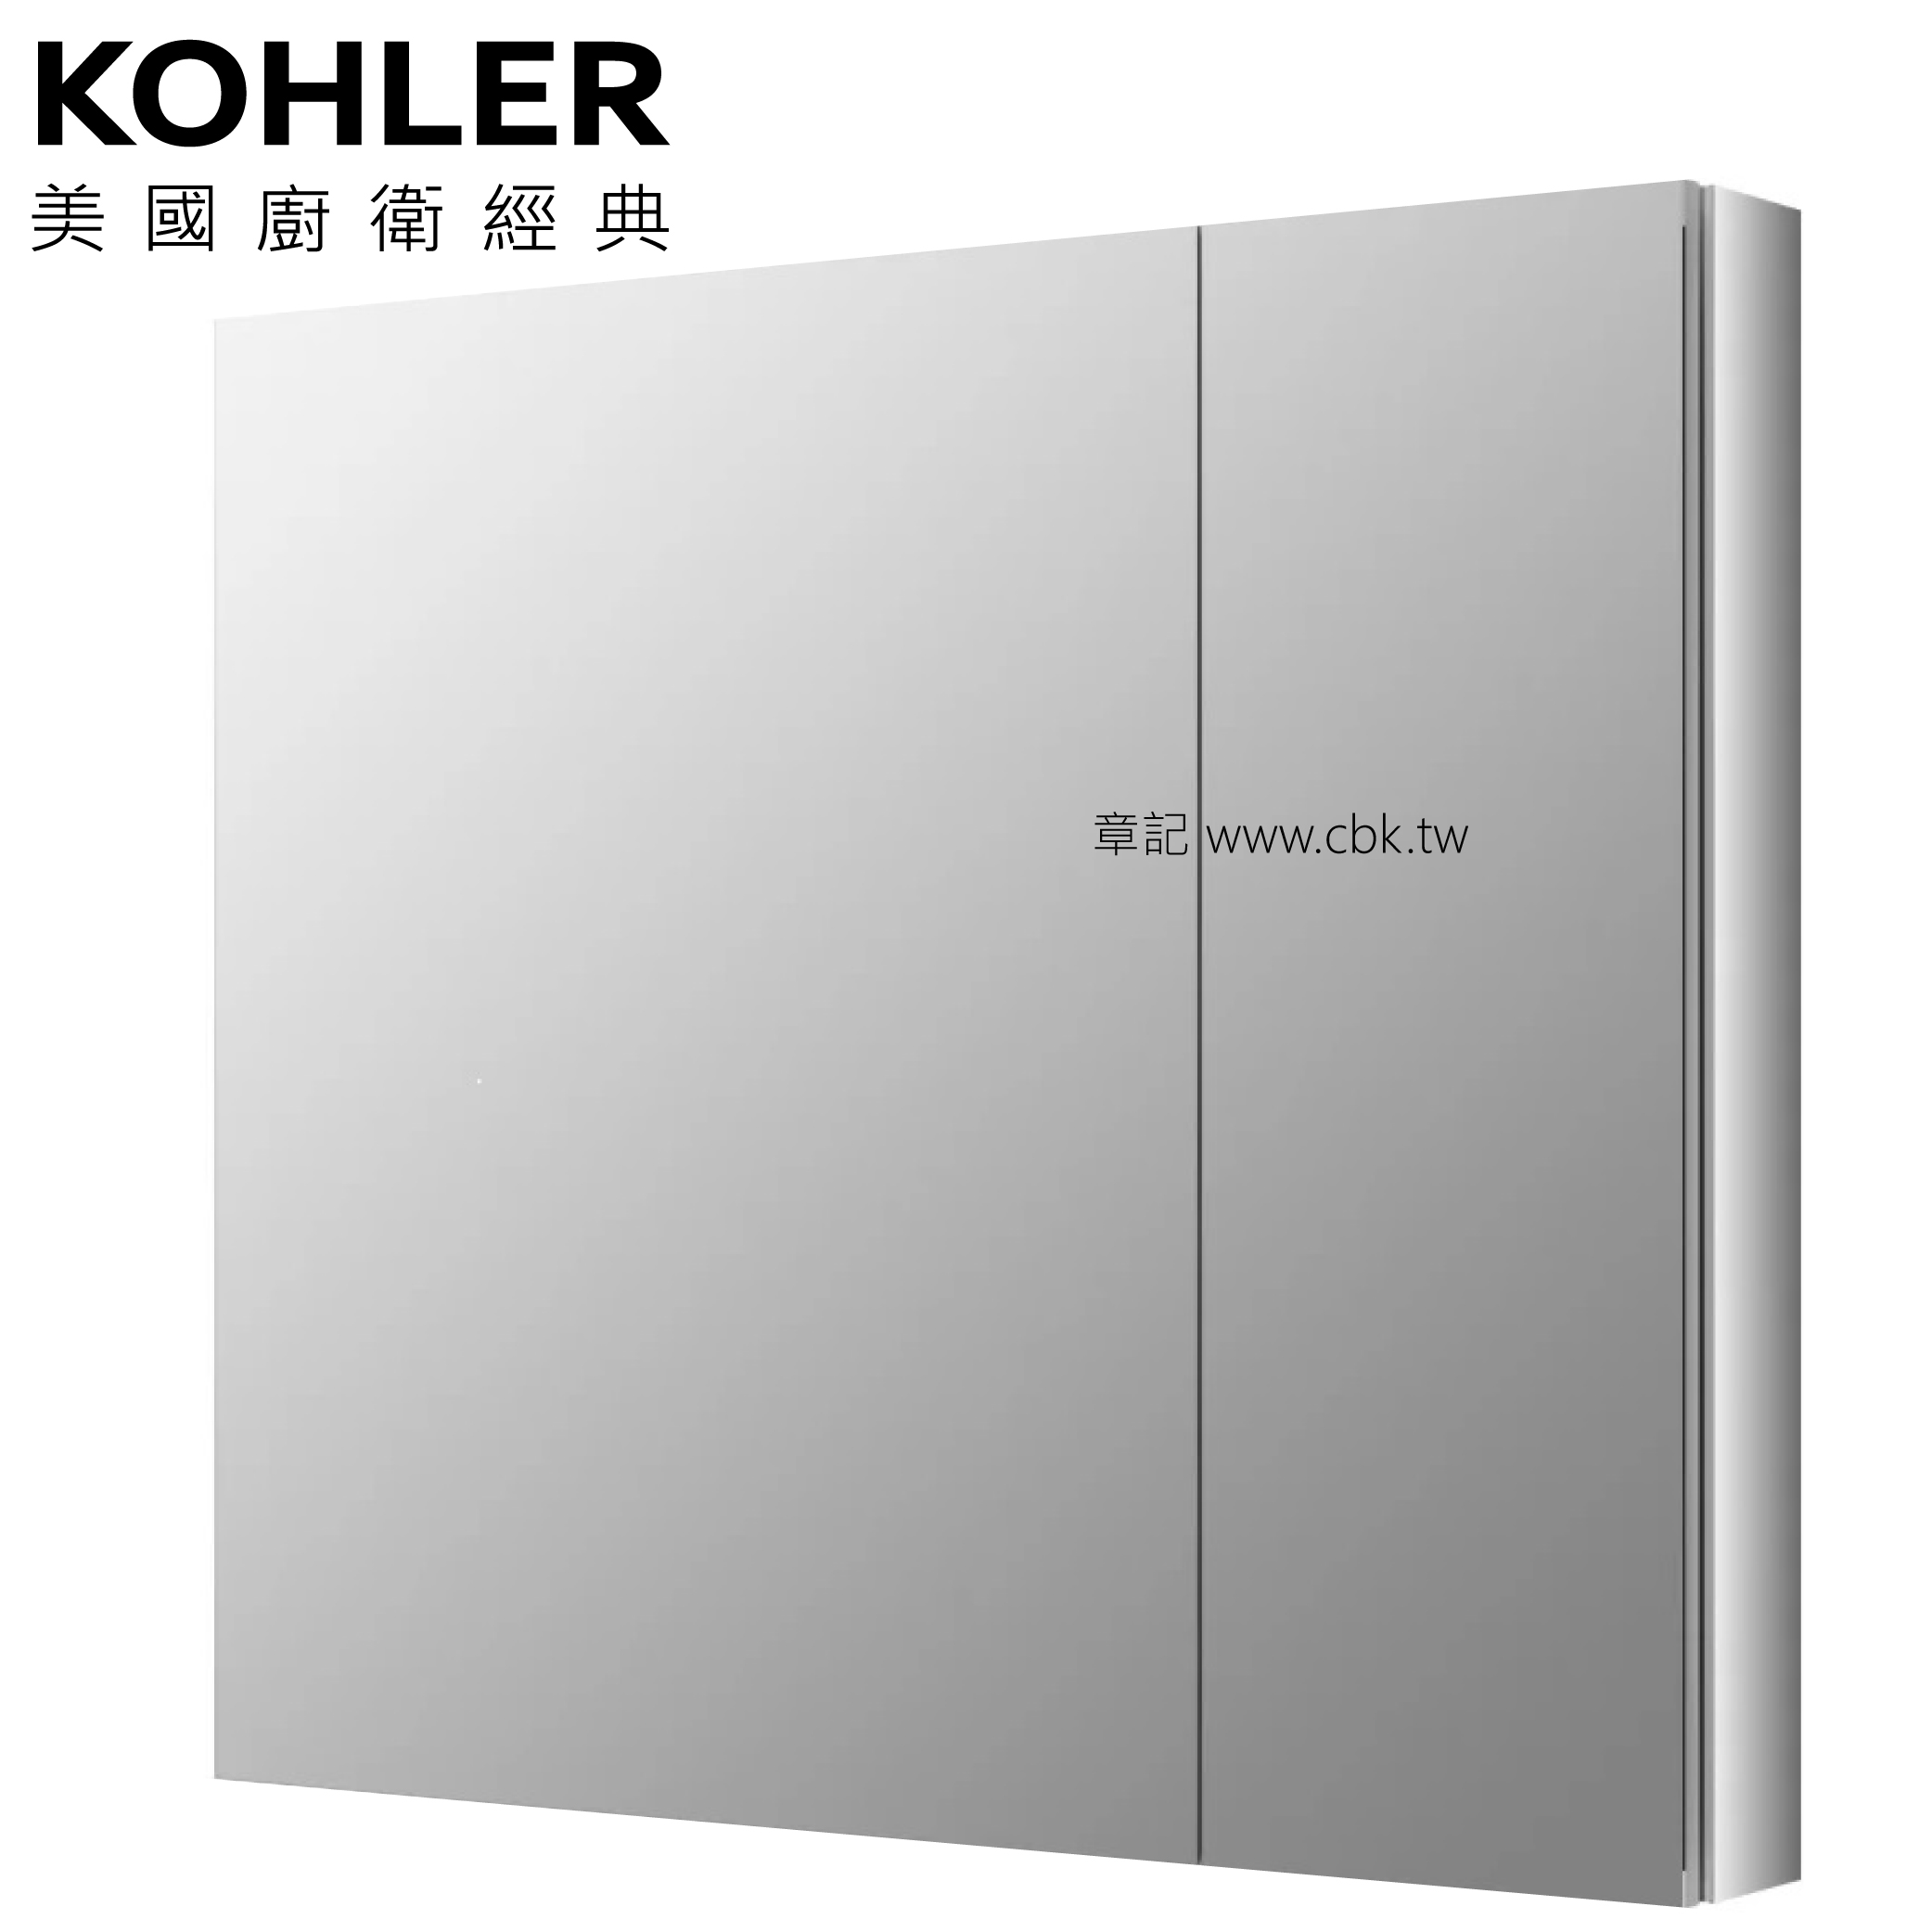 <已停產> KOHLER Verdera 鏡櫃 (87cm) K-99009T-NA 